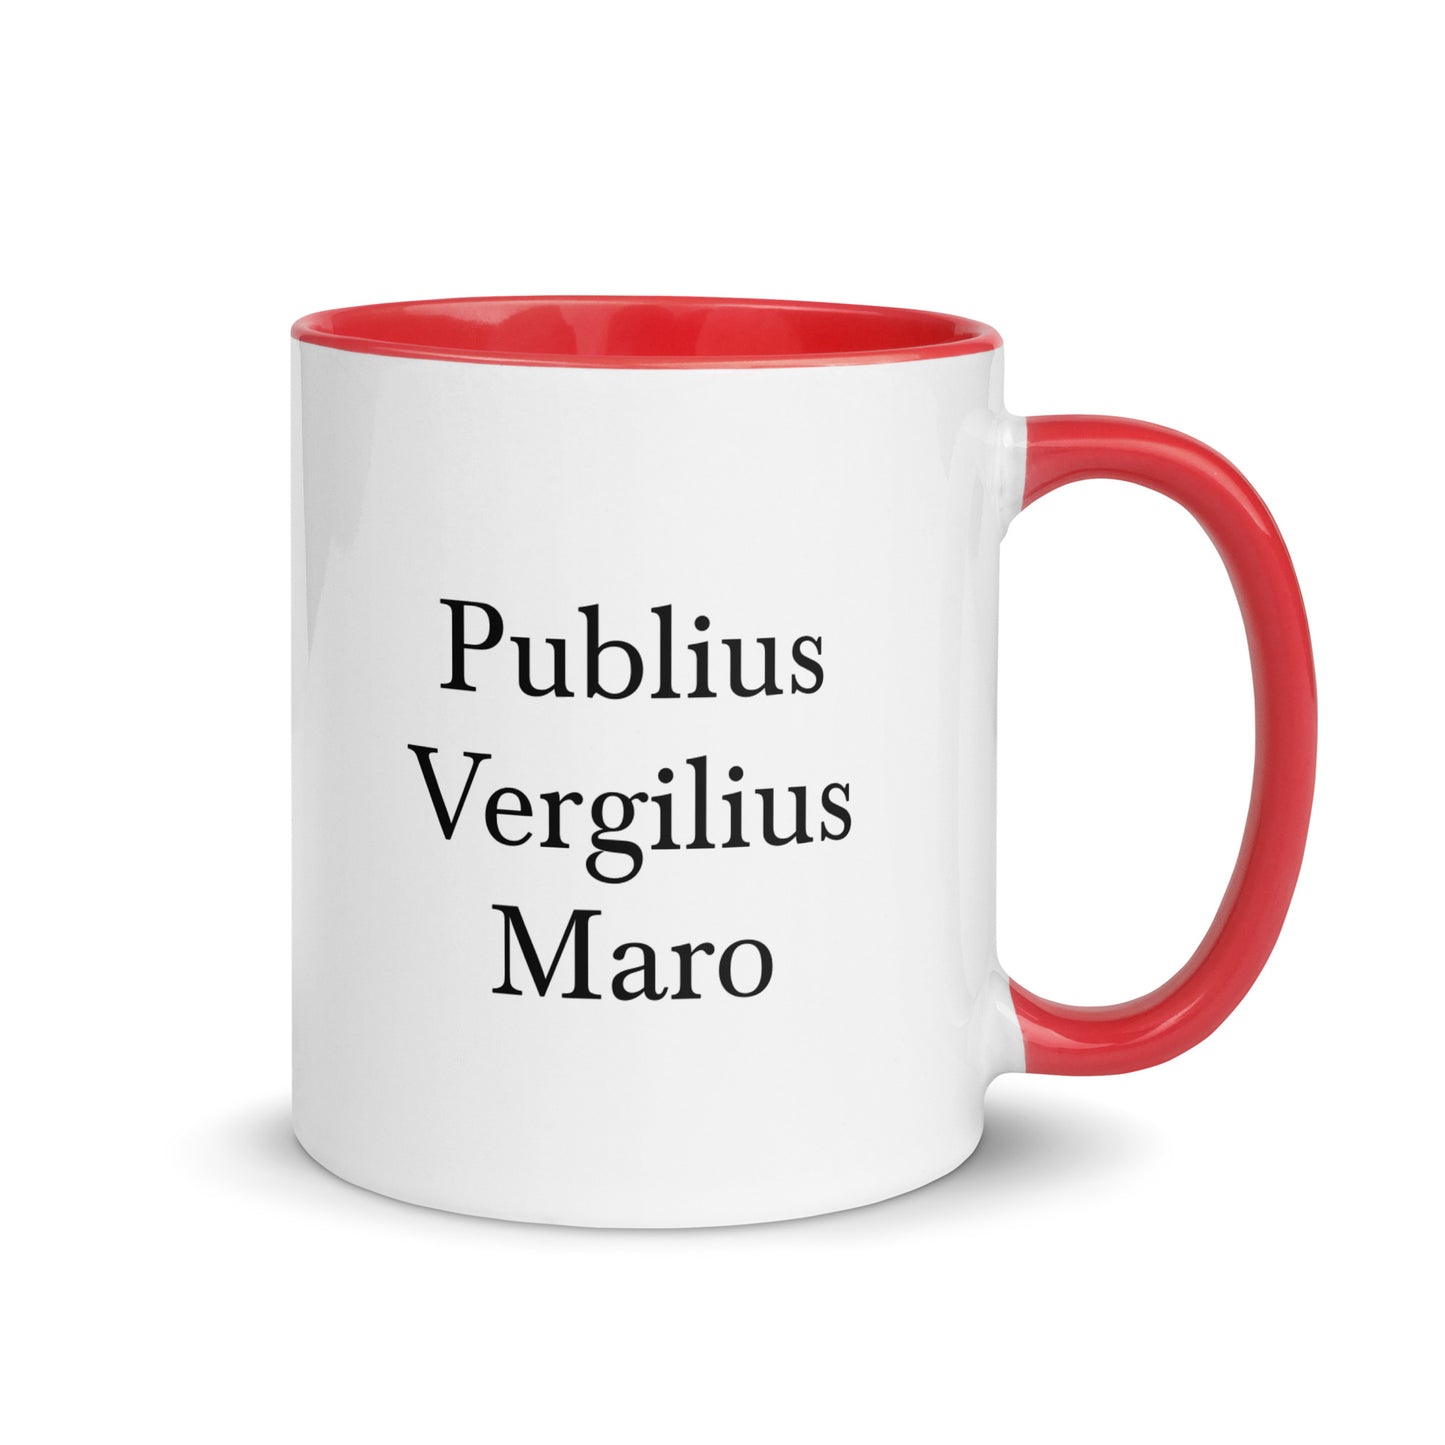 Publius Vergilius Maro mug with color inside